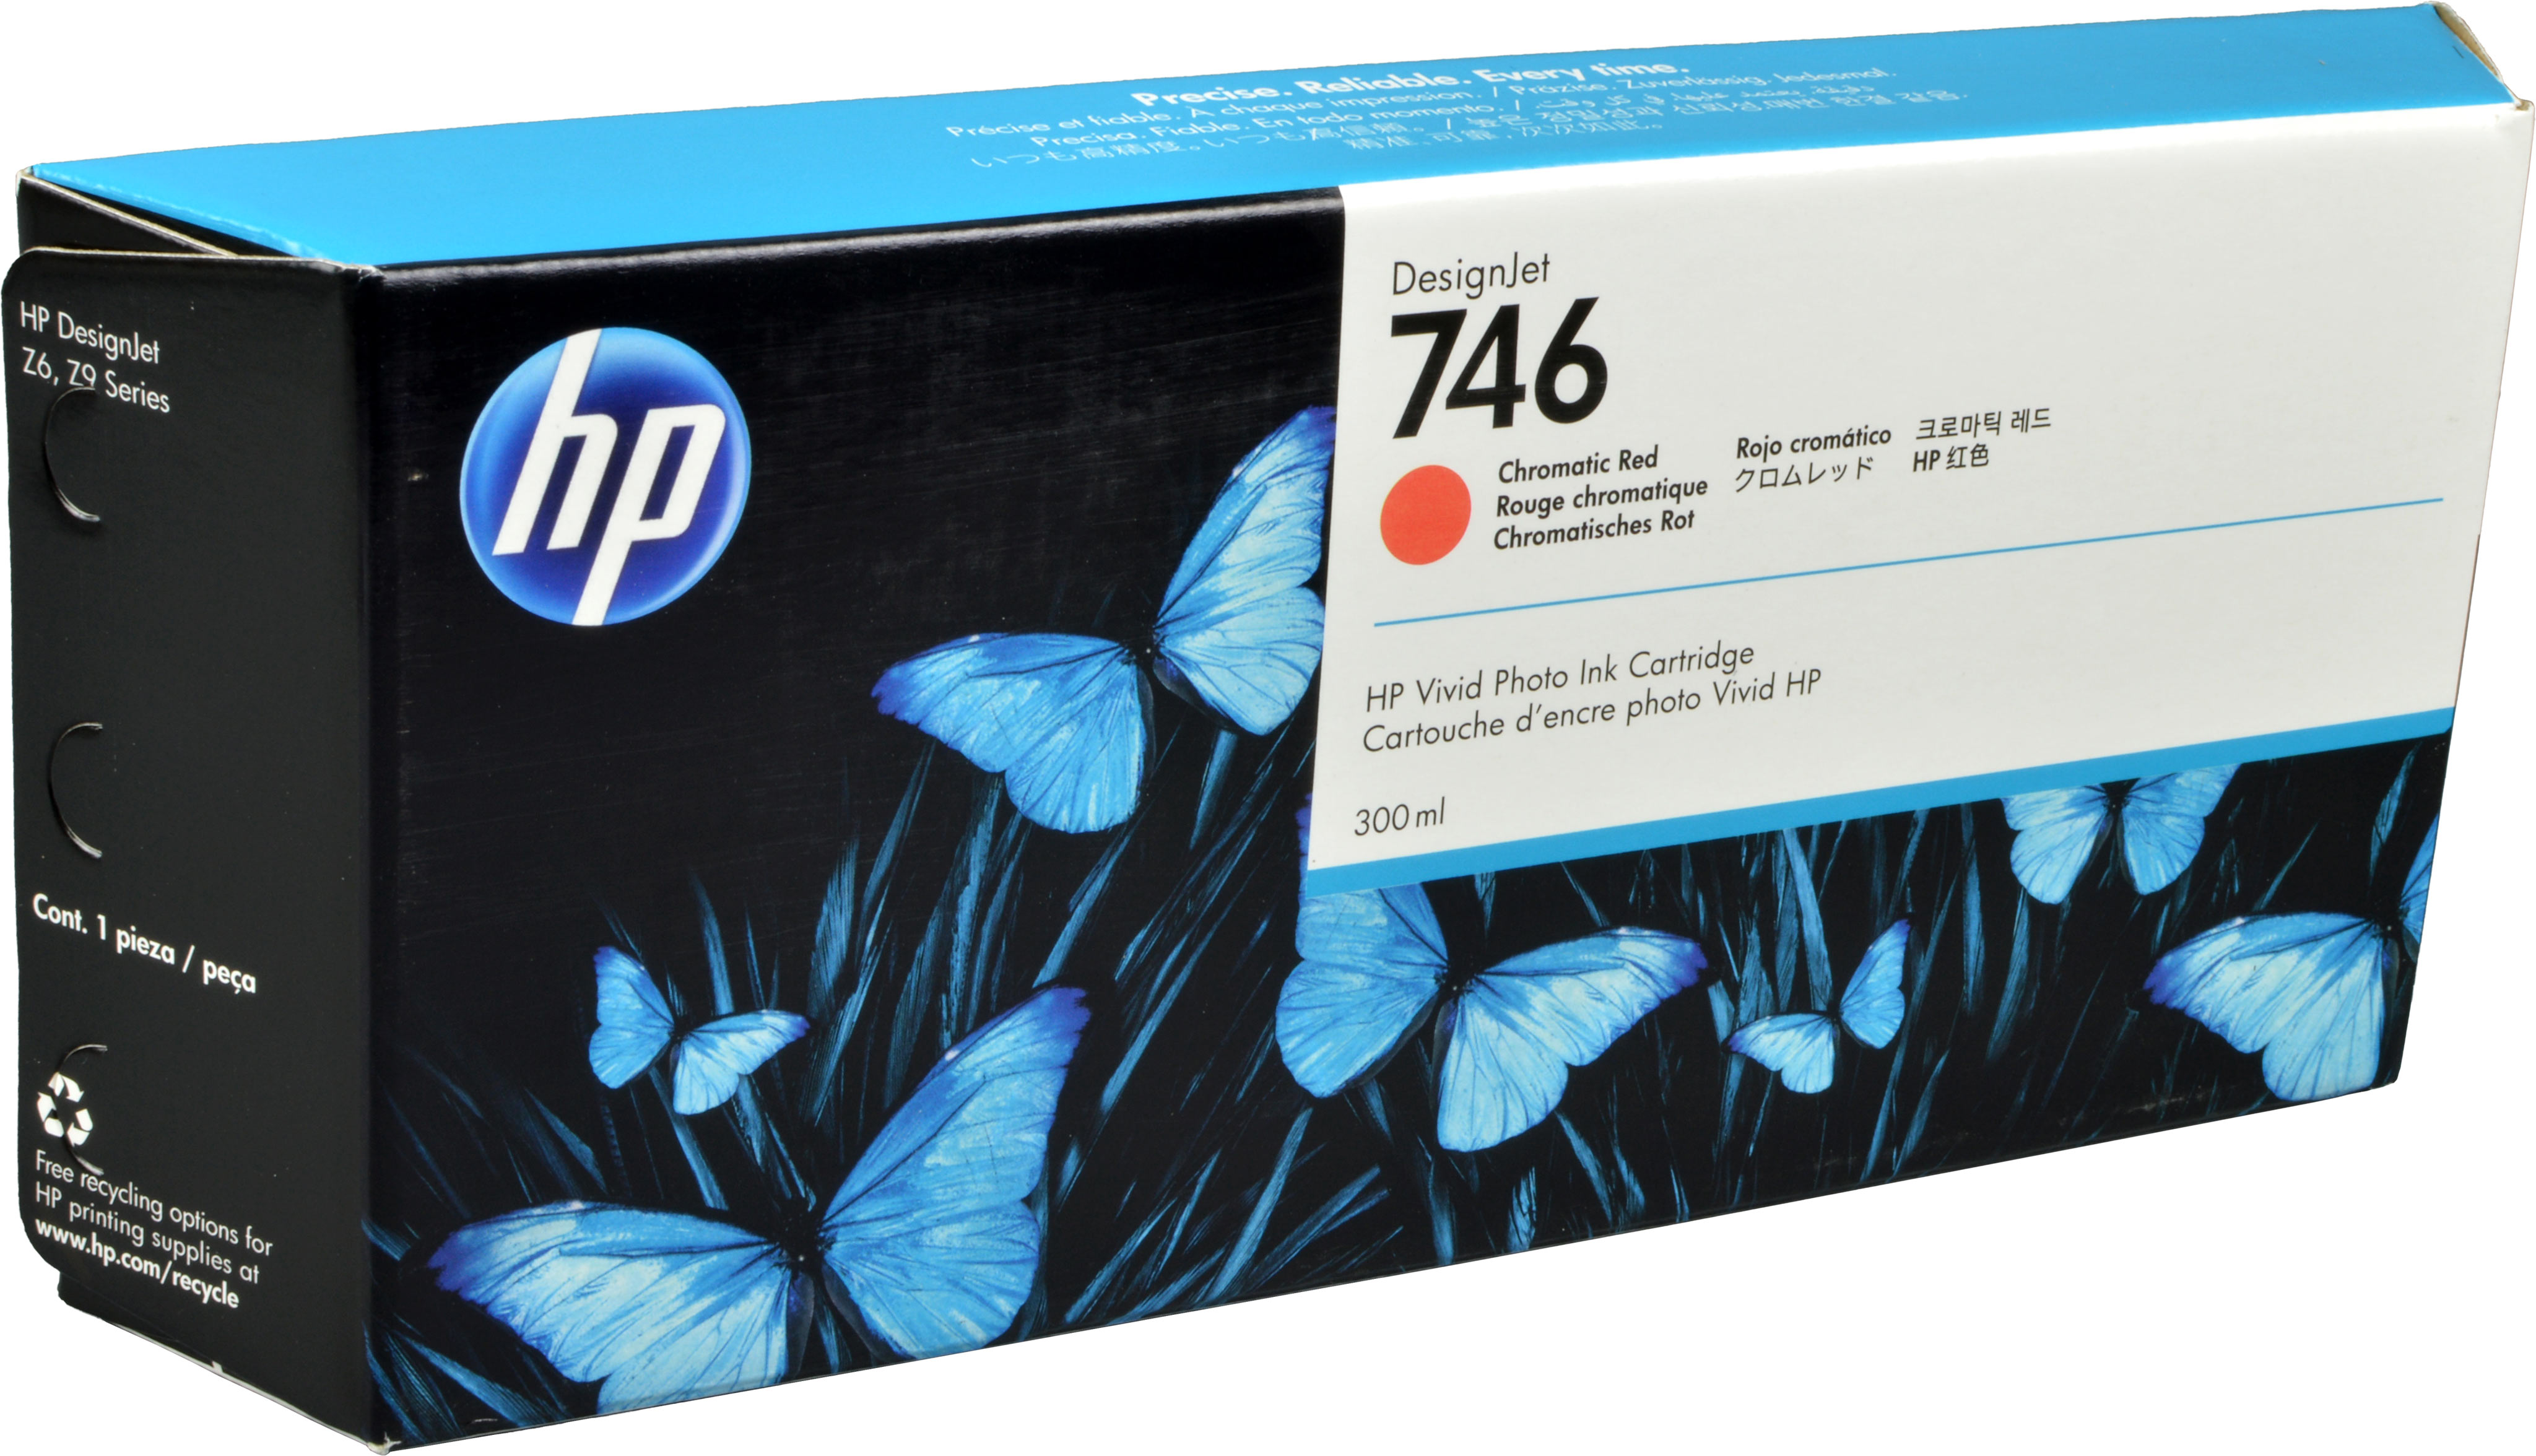 HP Tinte P2V81A  746  chromatic rot